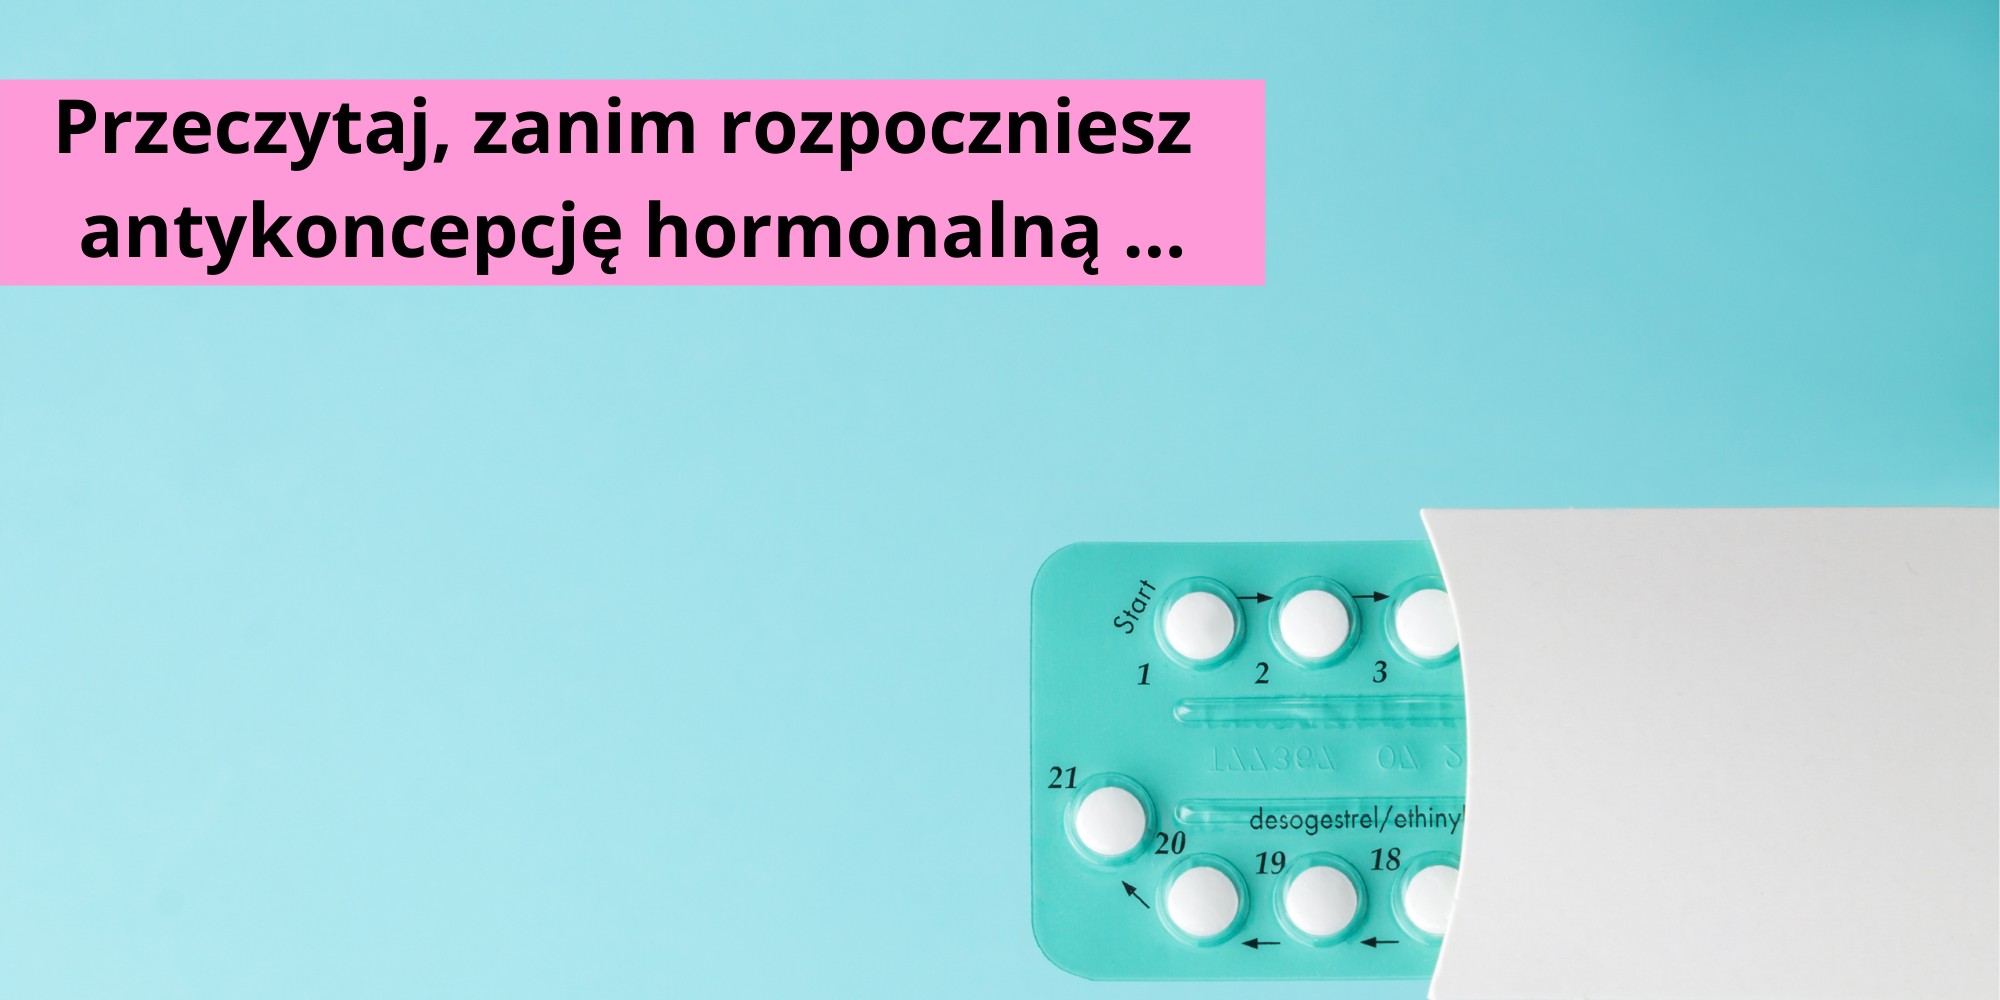 3 kroki przed rozpoczęciem antykoncepcji hormonalnej